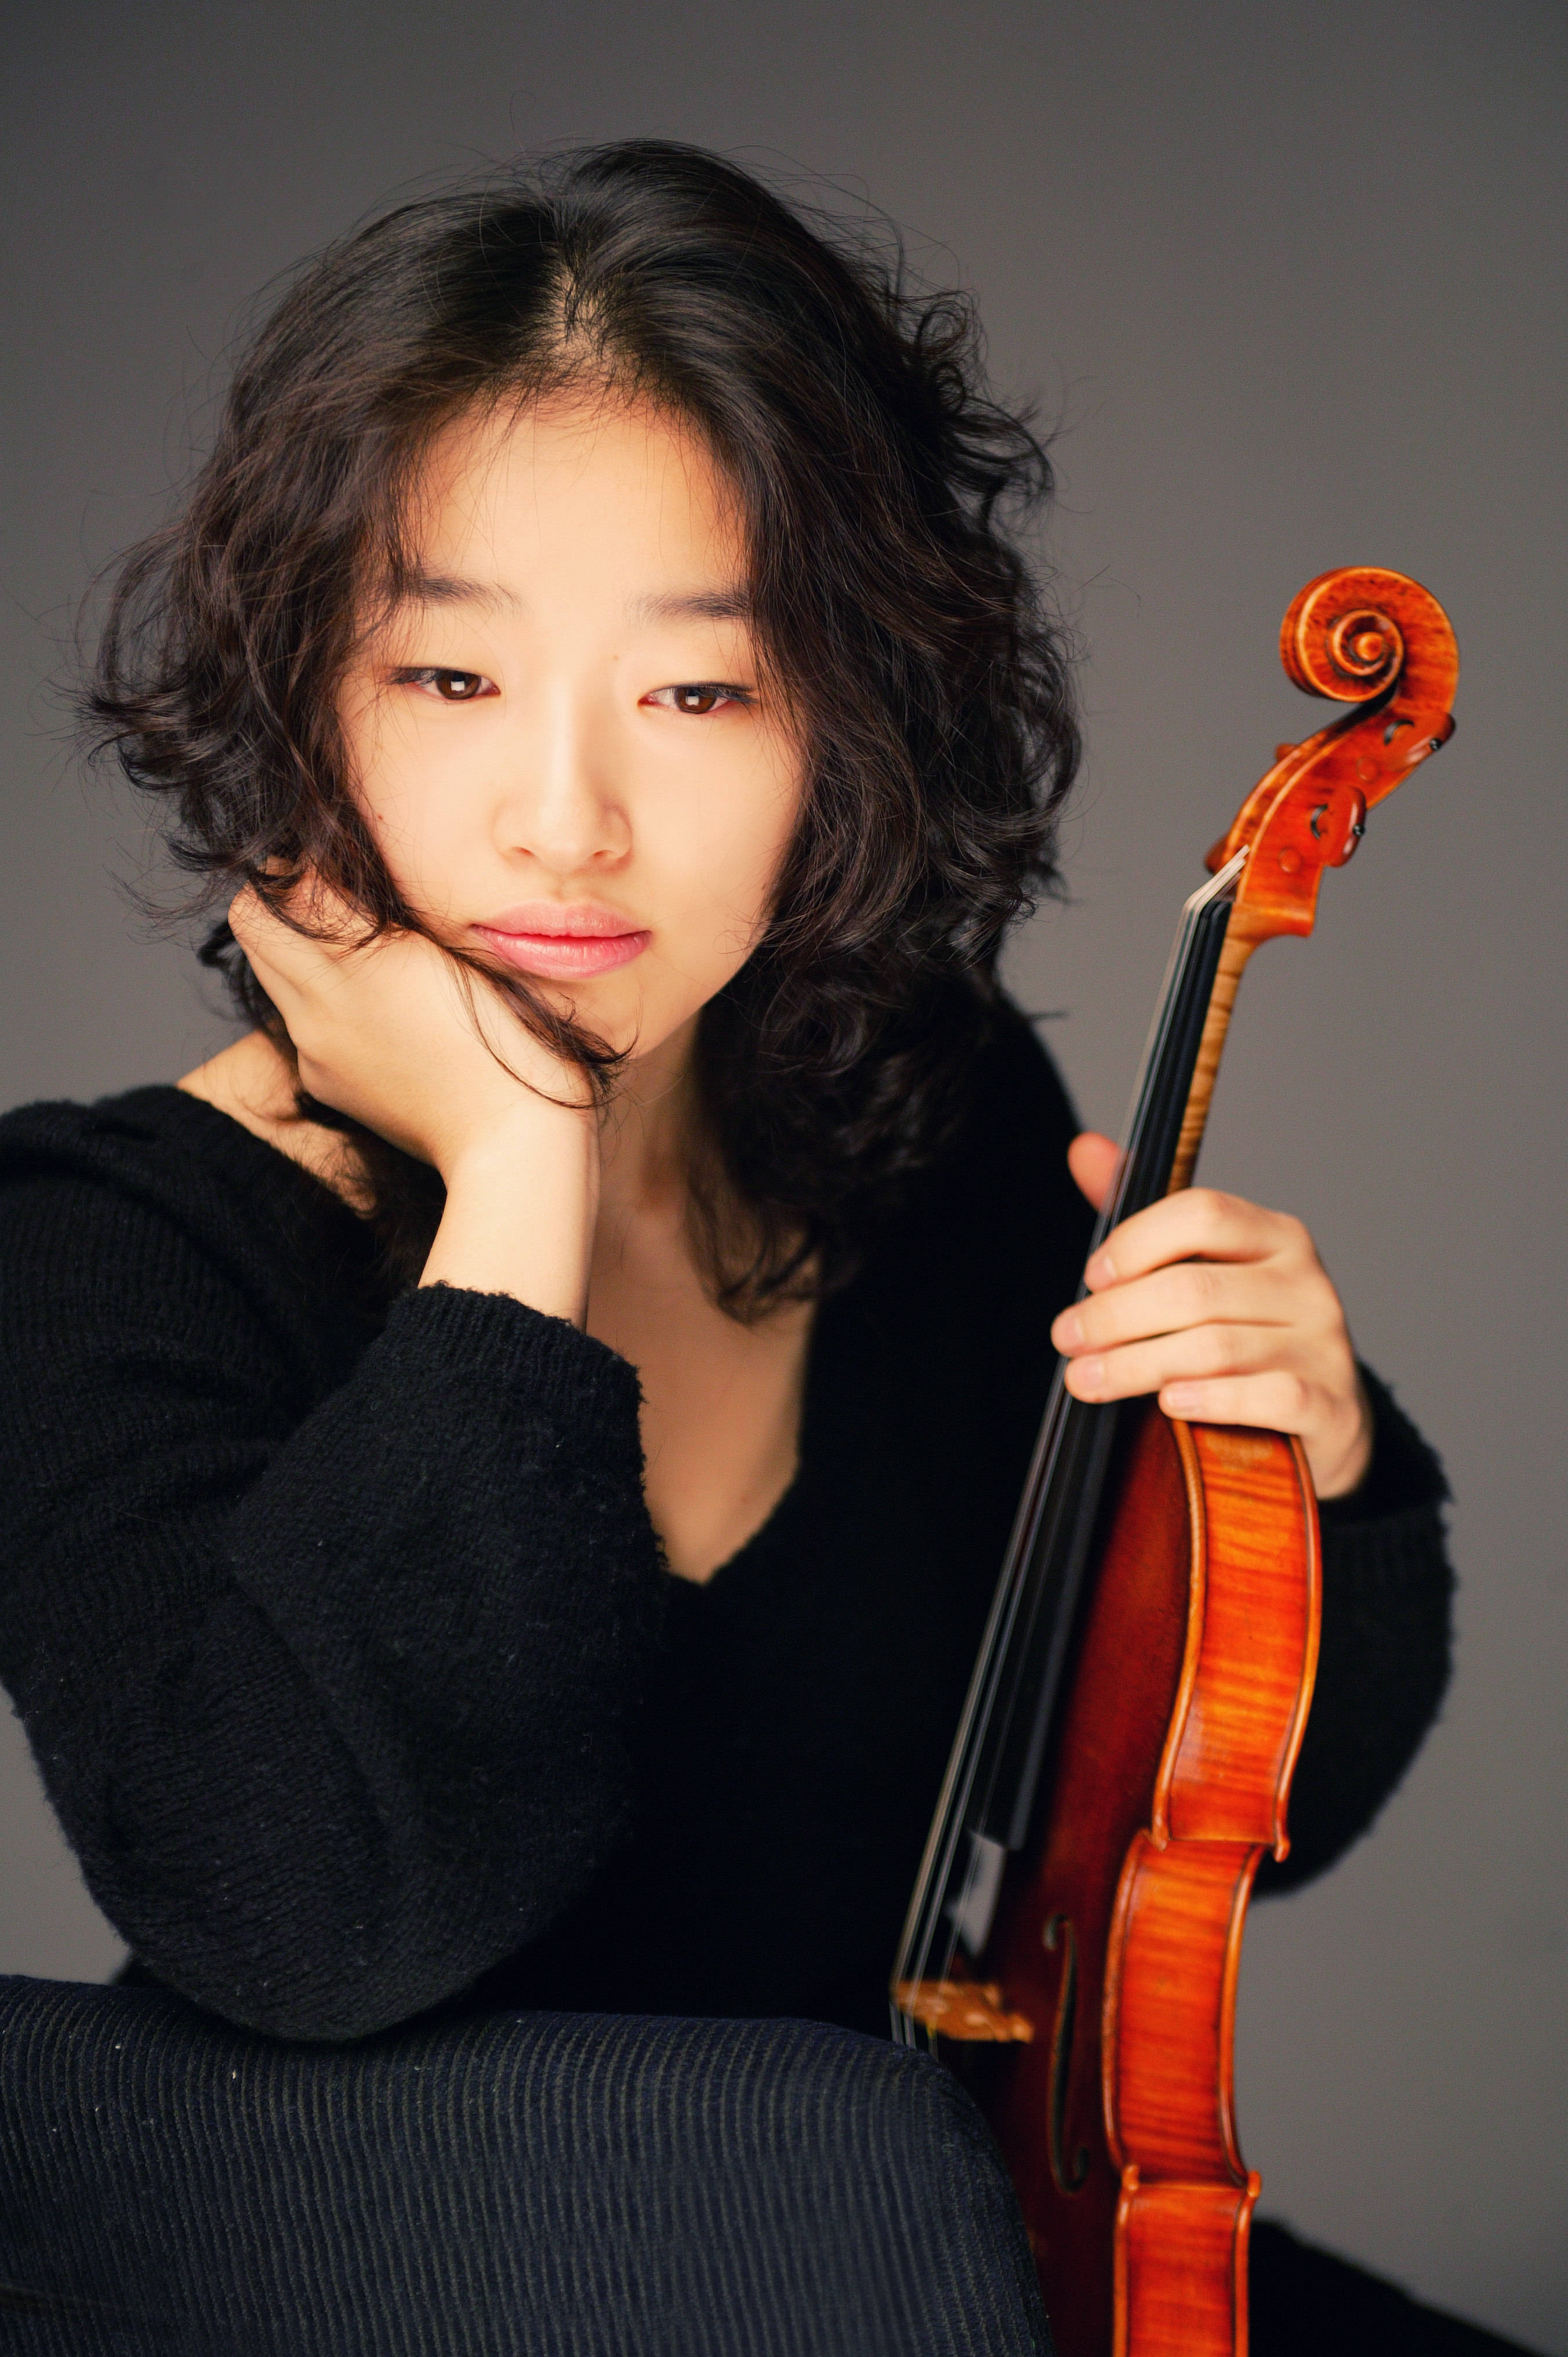 Lee Actor Violin Concerto HD Photos Gallery